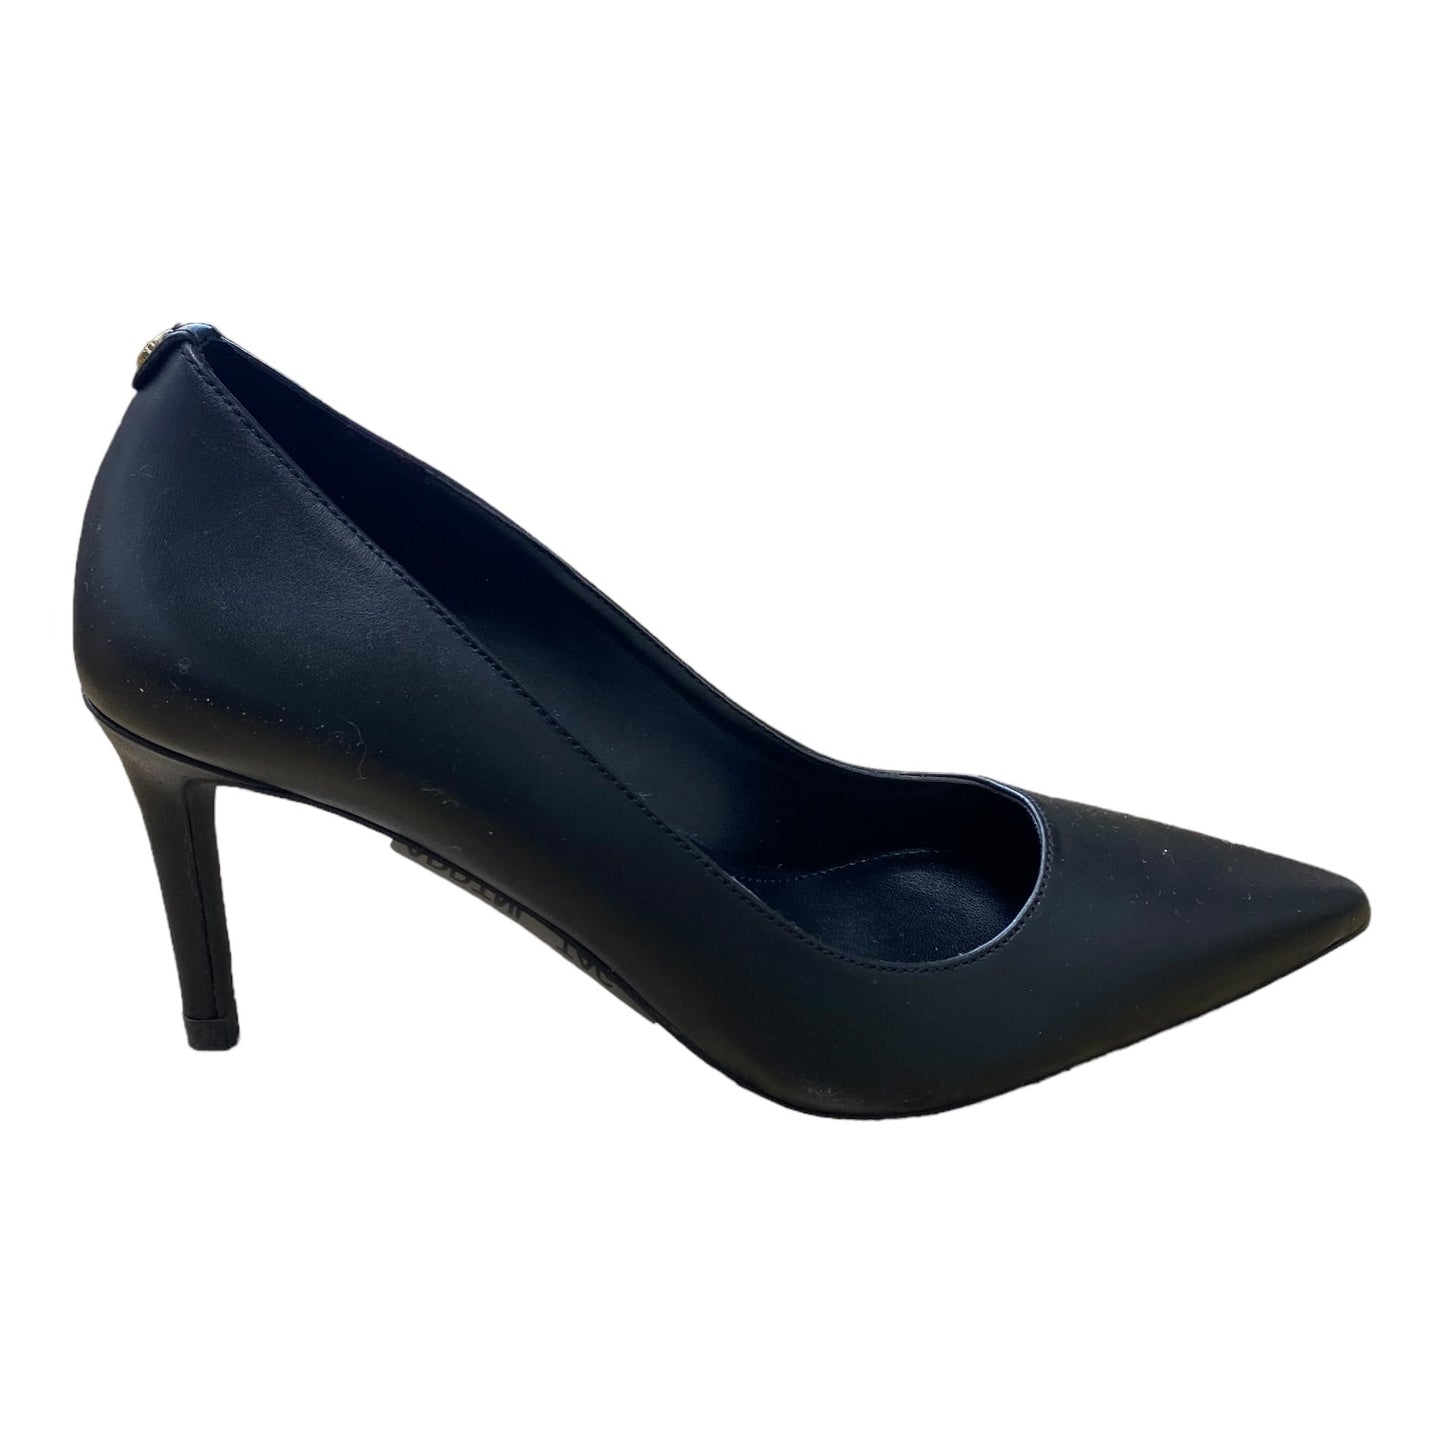 Black Shoes Heels Stiletto Michael Kors, Size 6